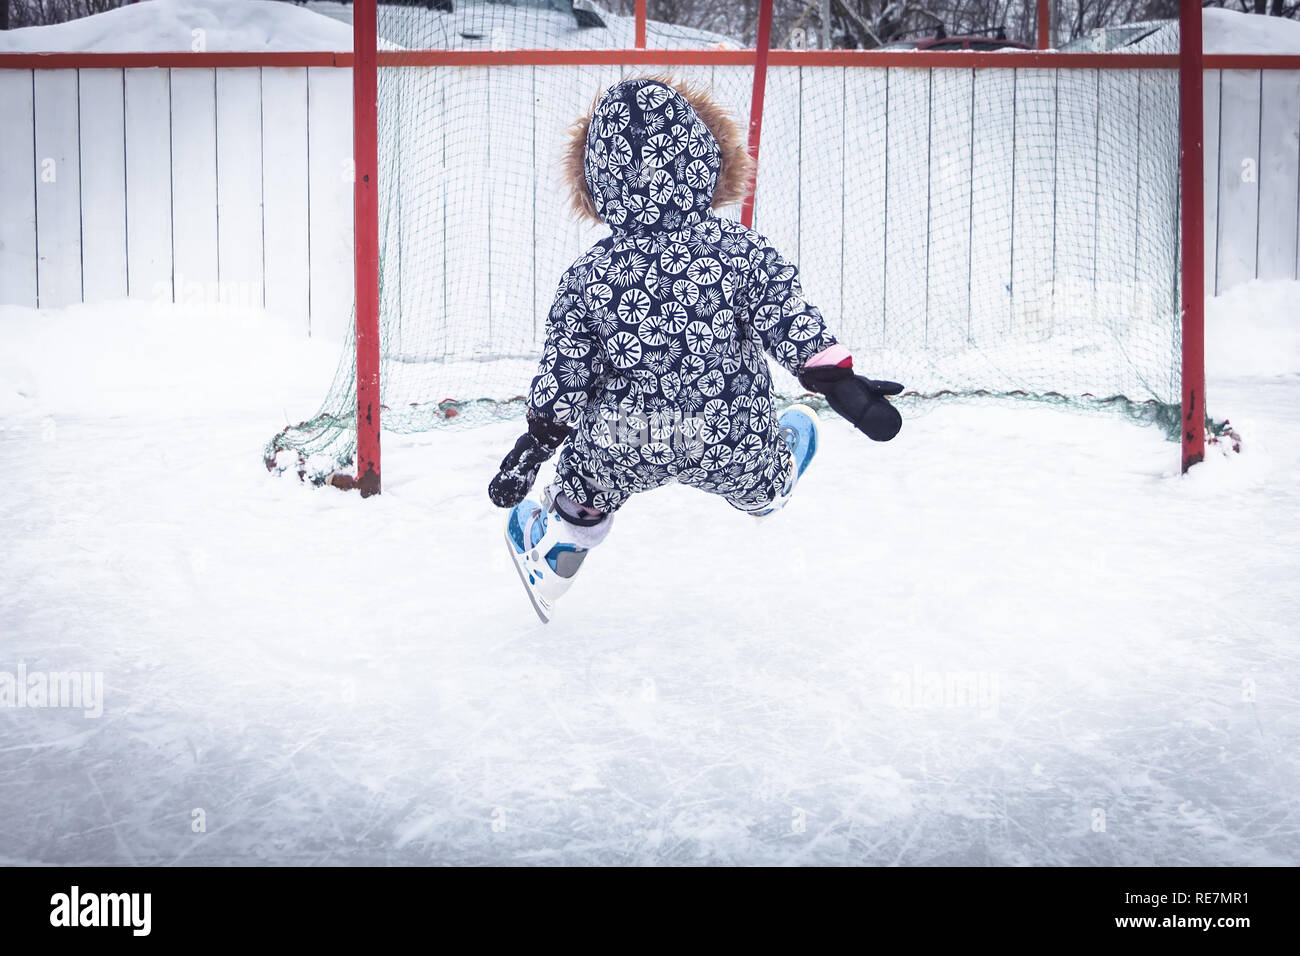 Tout-petit enfant d'apprentissage relevant du patinage sur glace patinoire surmonter les difficultés par le biais de blessures dans un parc de neige pendant les vacances d'hiver Banque D'Images